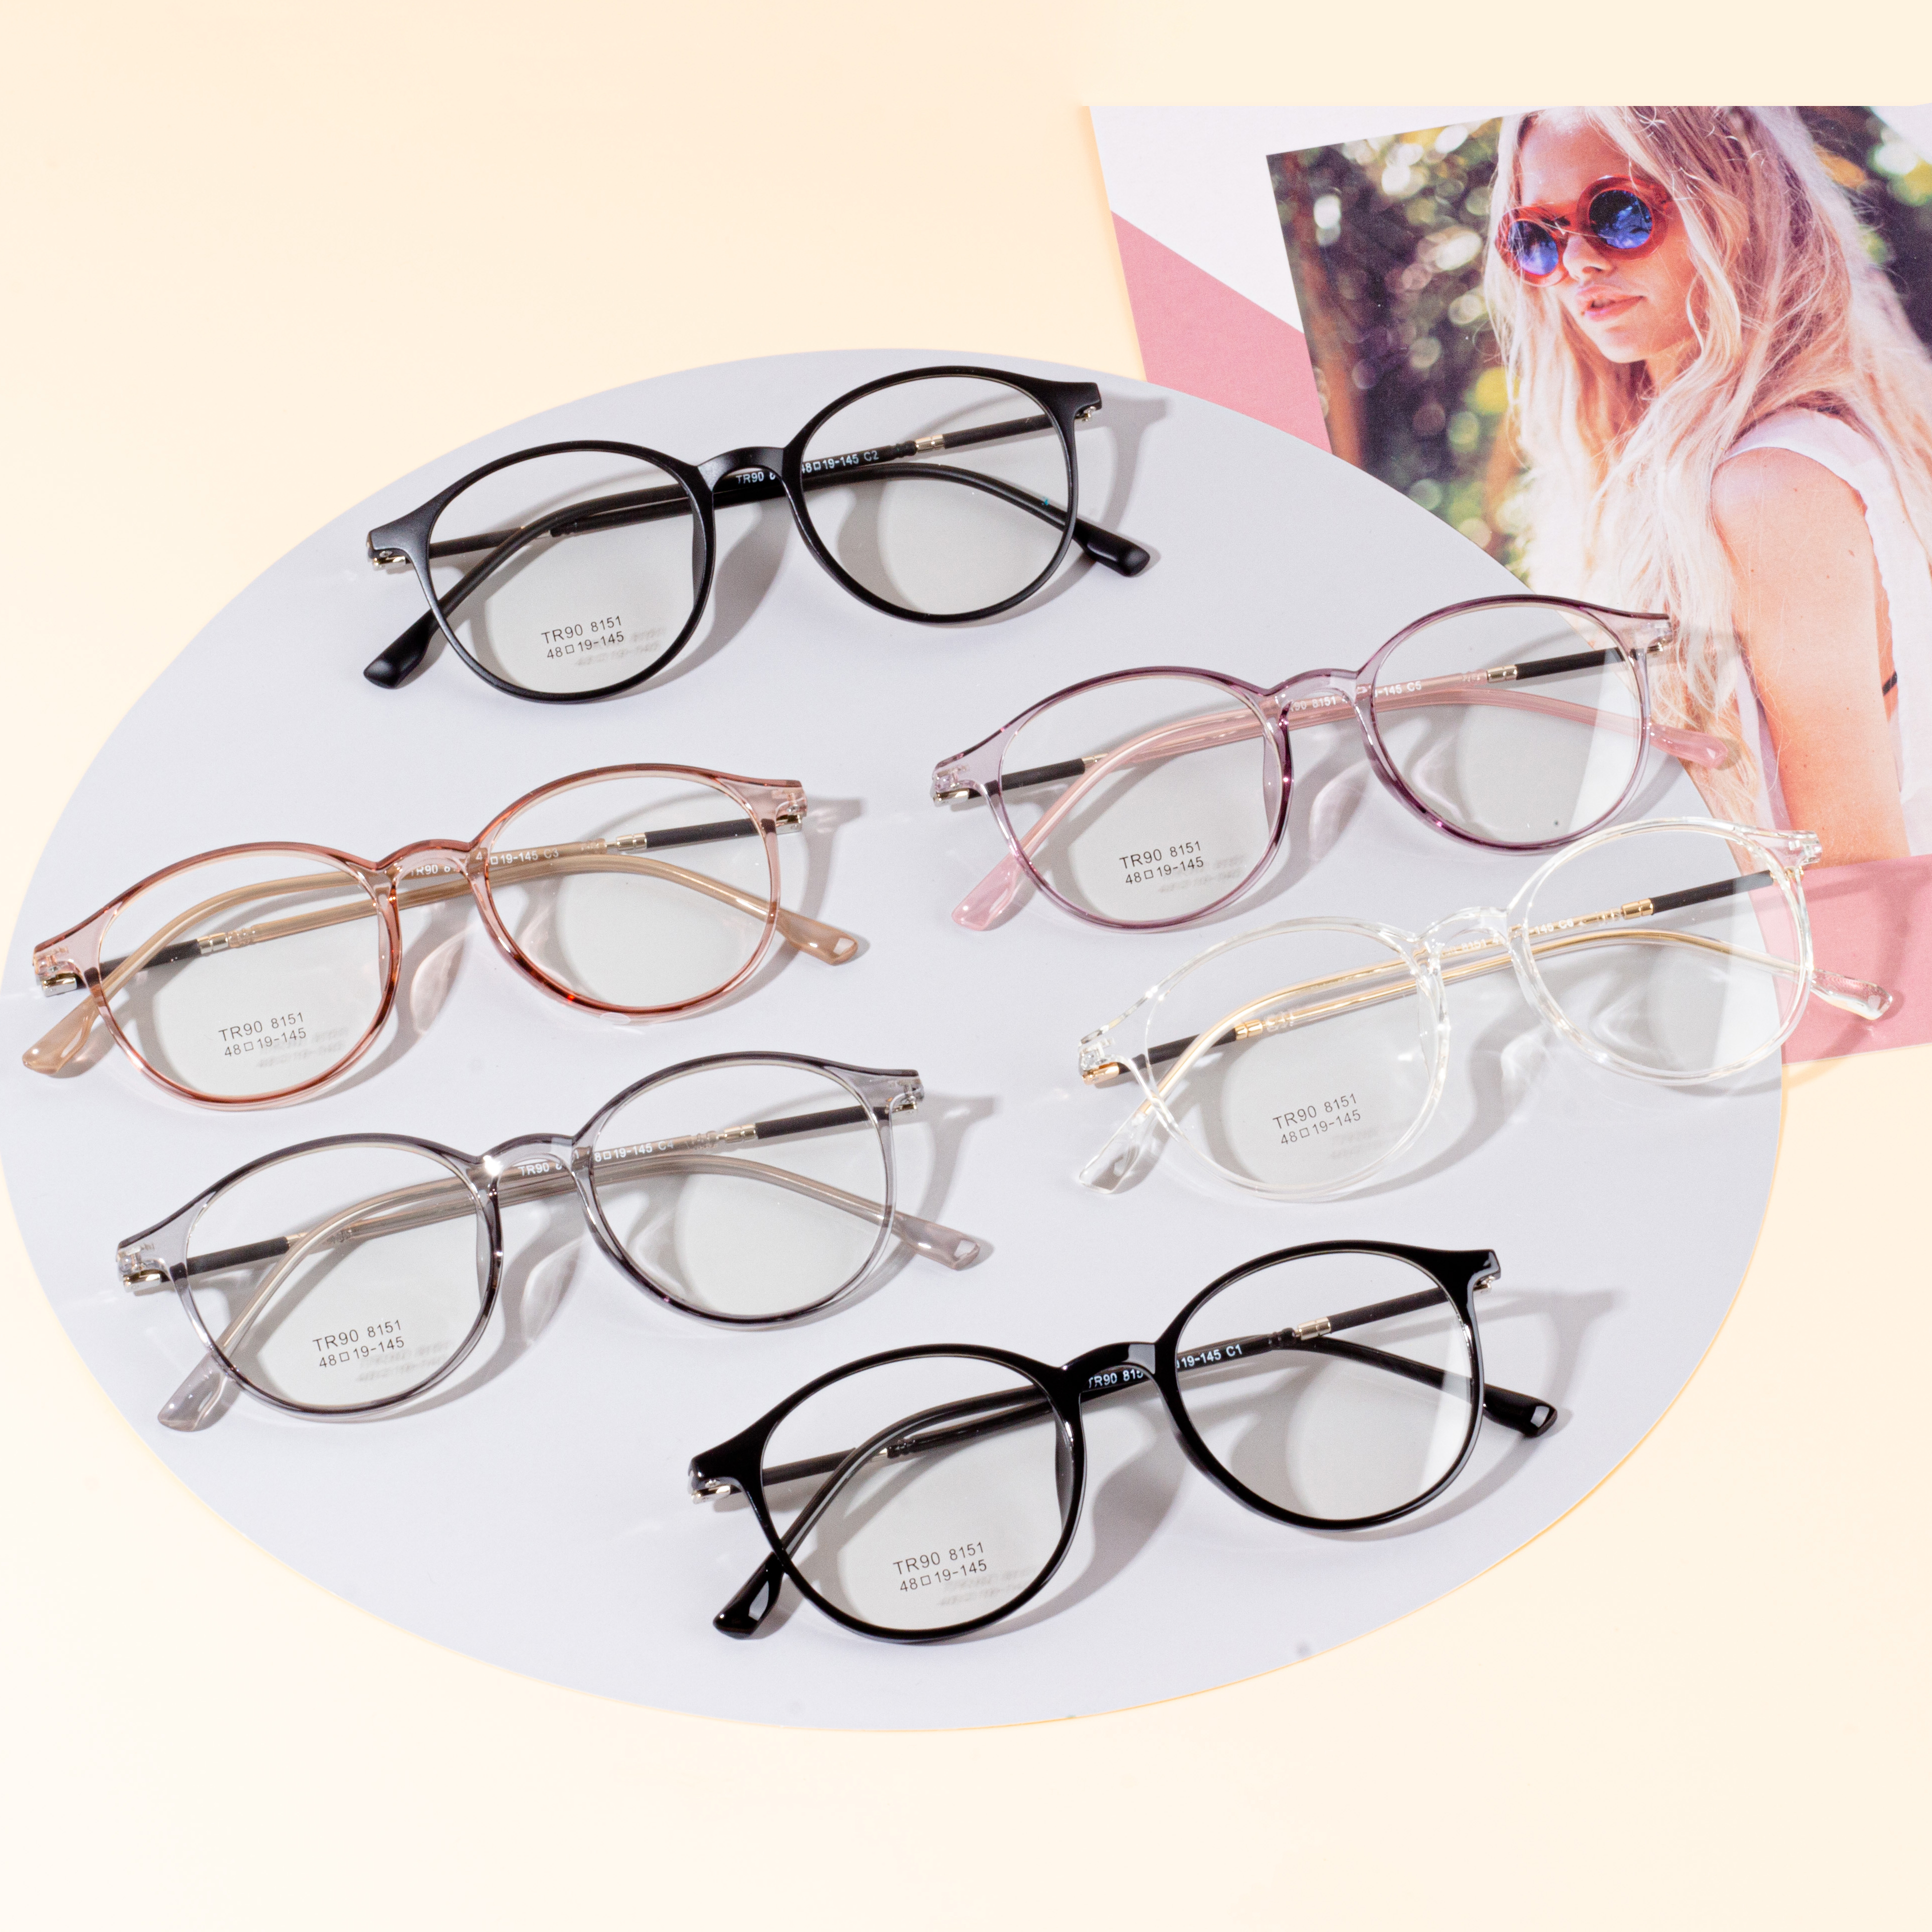 පිරිමි සහ කාන්තා නිර්මාණ රාමු - Eyeglasses.com 广告· https://www.eyeglasses.com/ (888) 896-3885 ඉහළම ගෝලීය Eyeglass සන්නාමවලින් අද සිල්ලර මිලෙන් අඩක් සඳහා සාප්පු නිර්මාණකරණ රාමු.